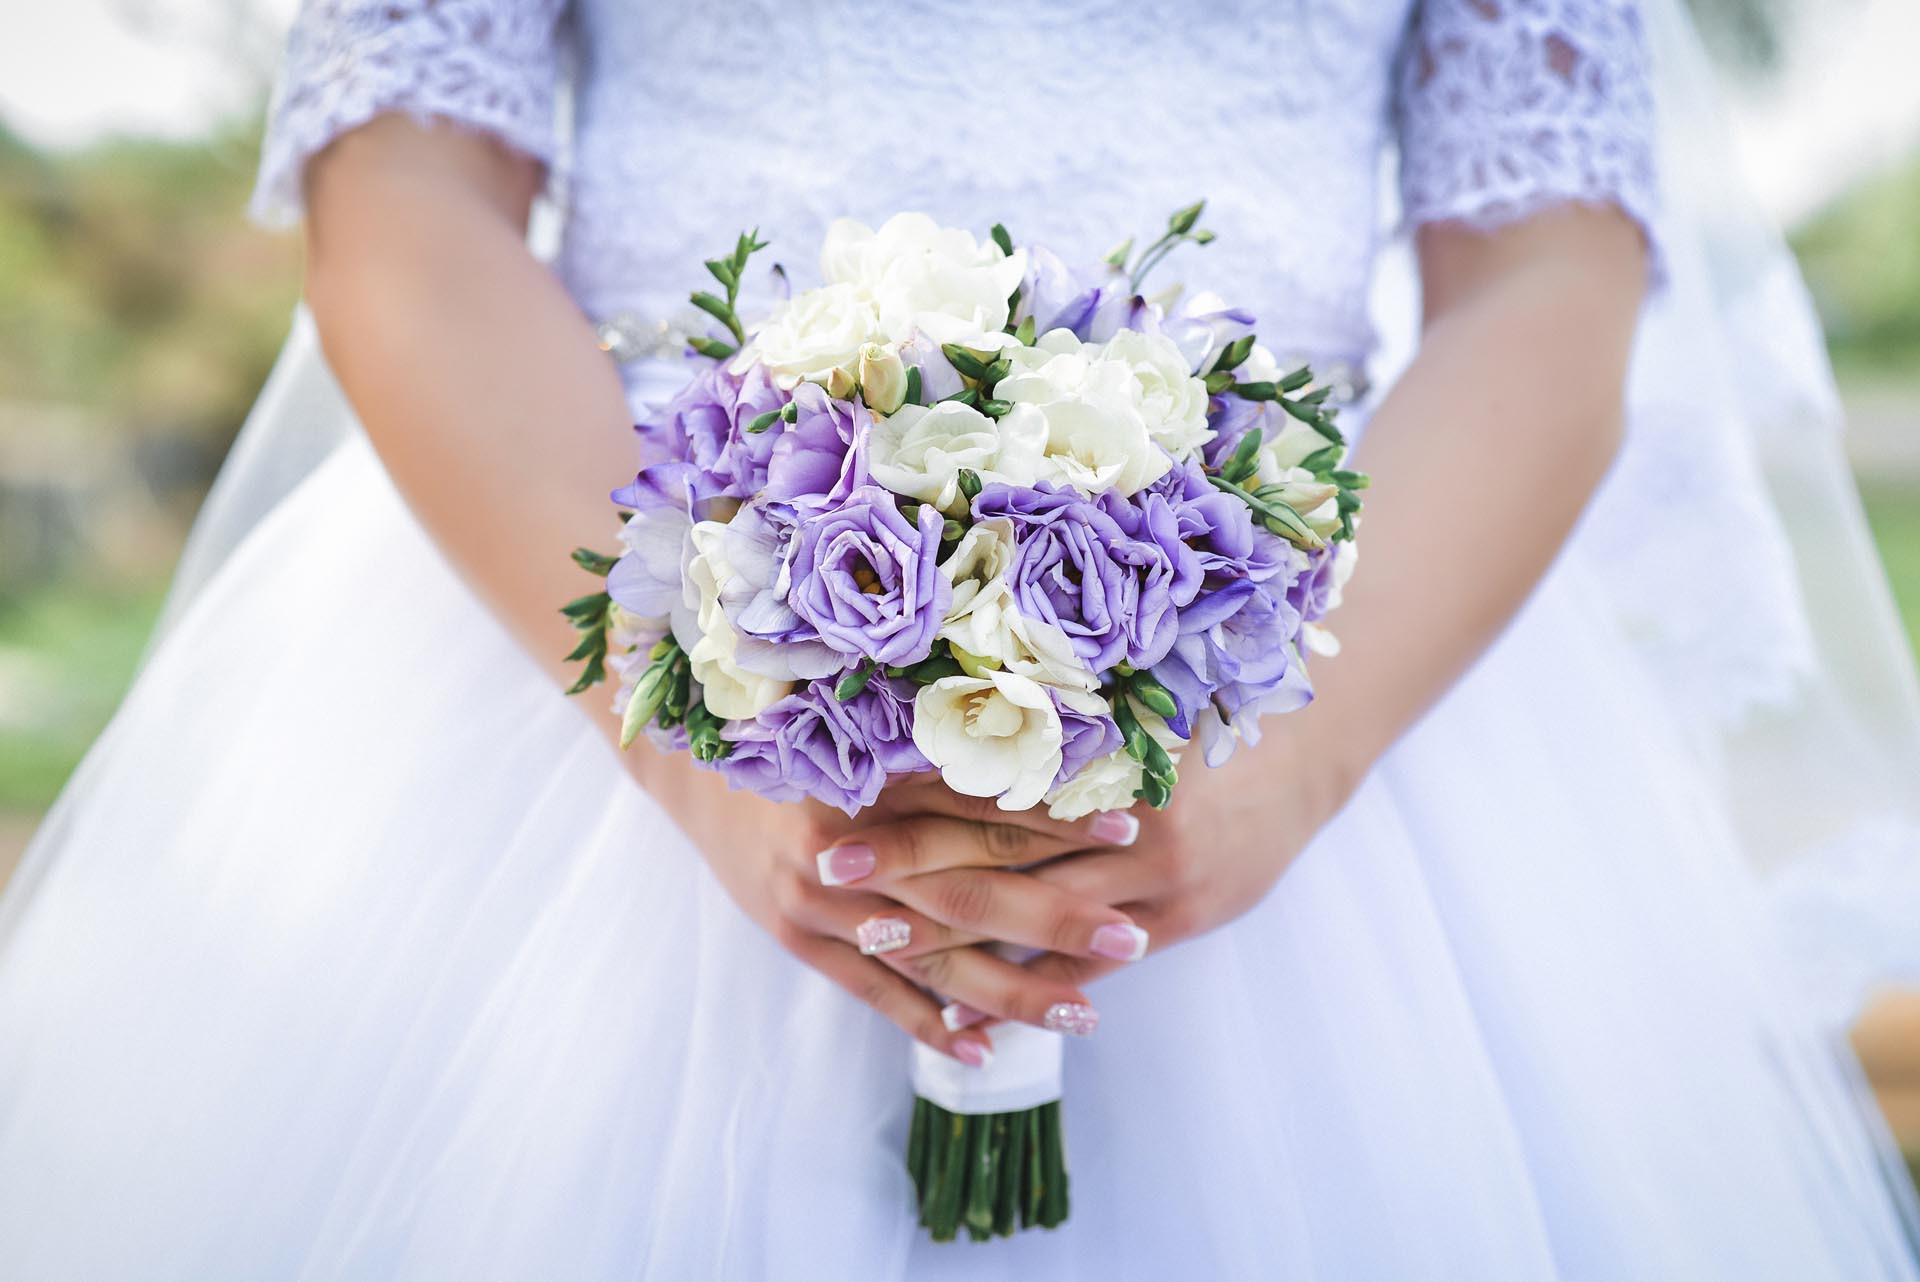 Brautstrauß Lila
 Brautstrauß in Lila und Weiß Heiraten mit braut